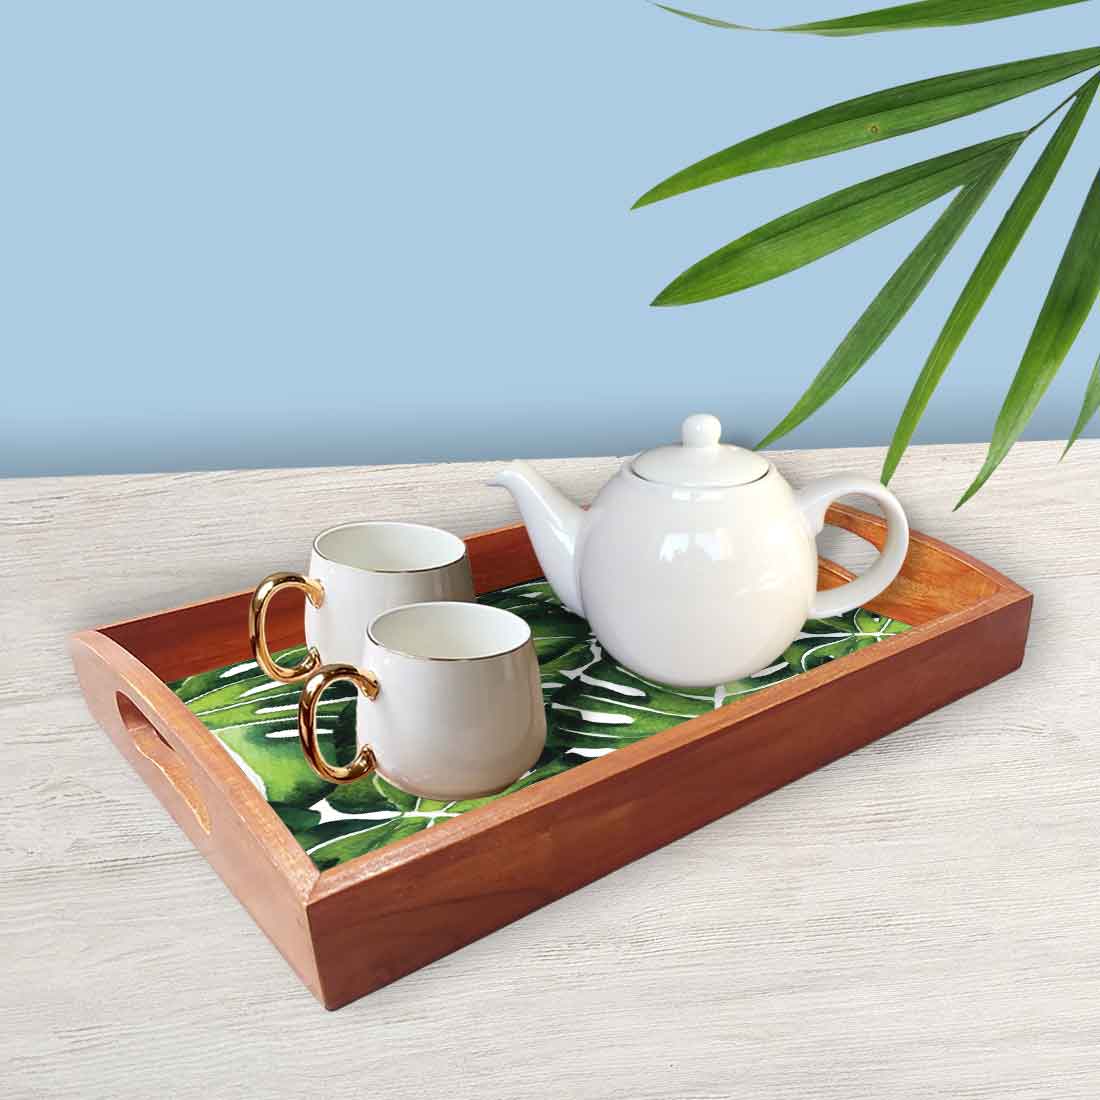 Designer Wooden Food Platter Trays for Serving Nesting Tray Set - Monstra Leaf